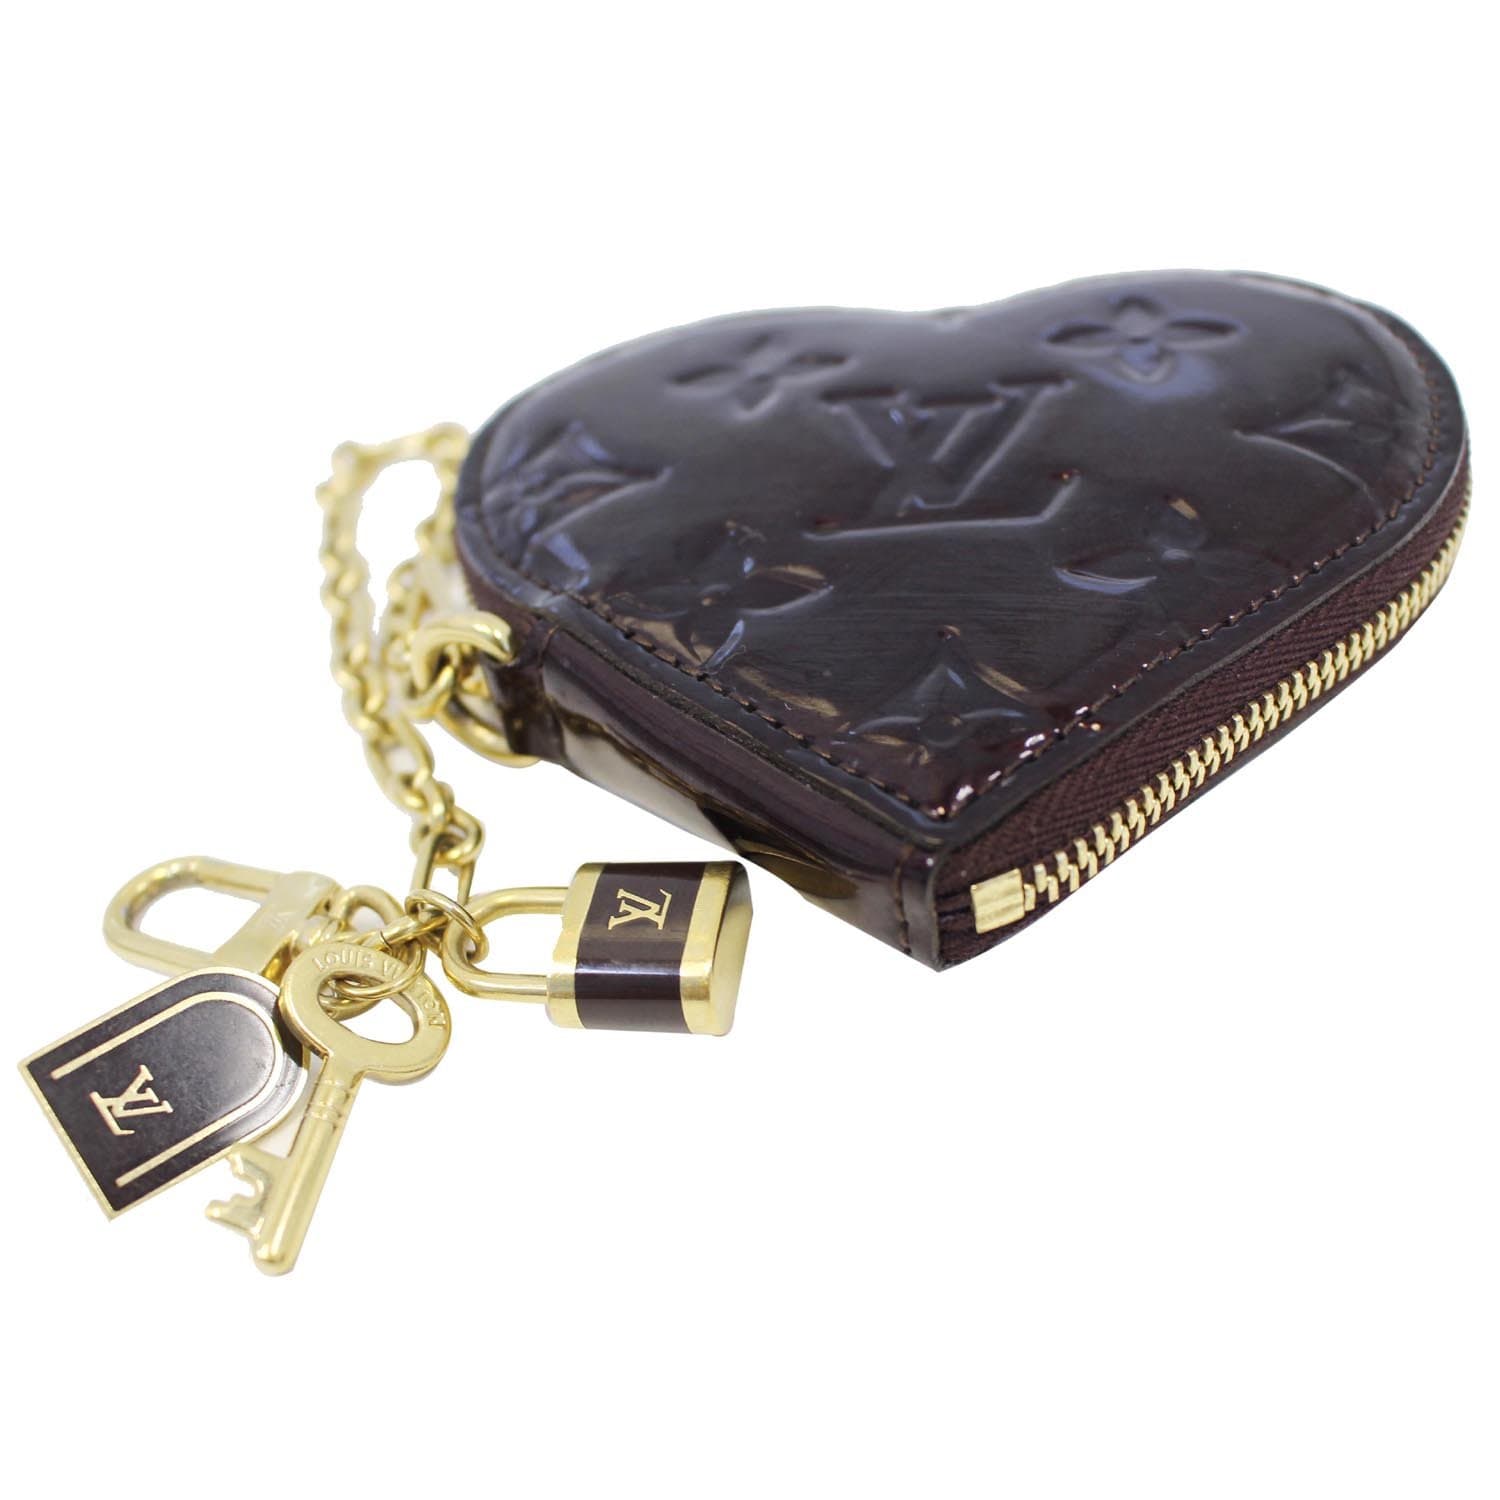 Louis Vuitton, Accessories, Authentic Louis Vuitton Heart Coin Pouch